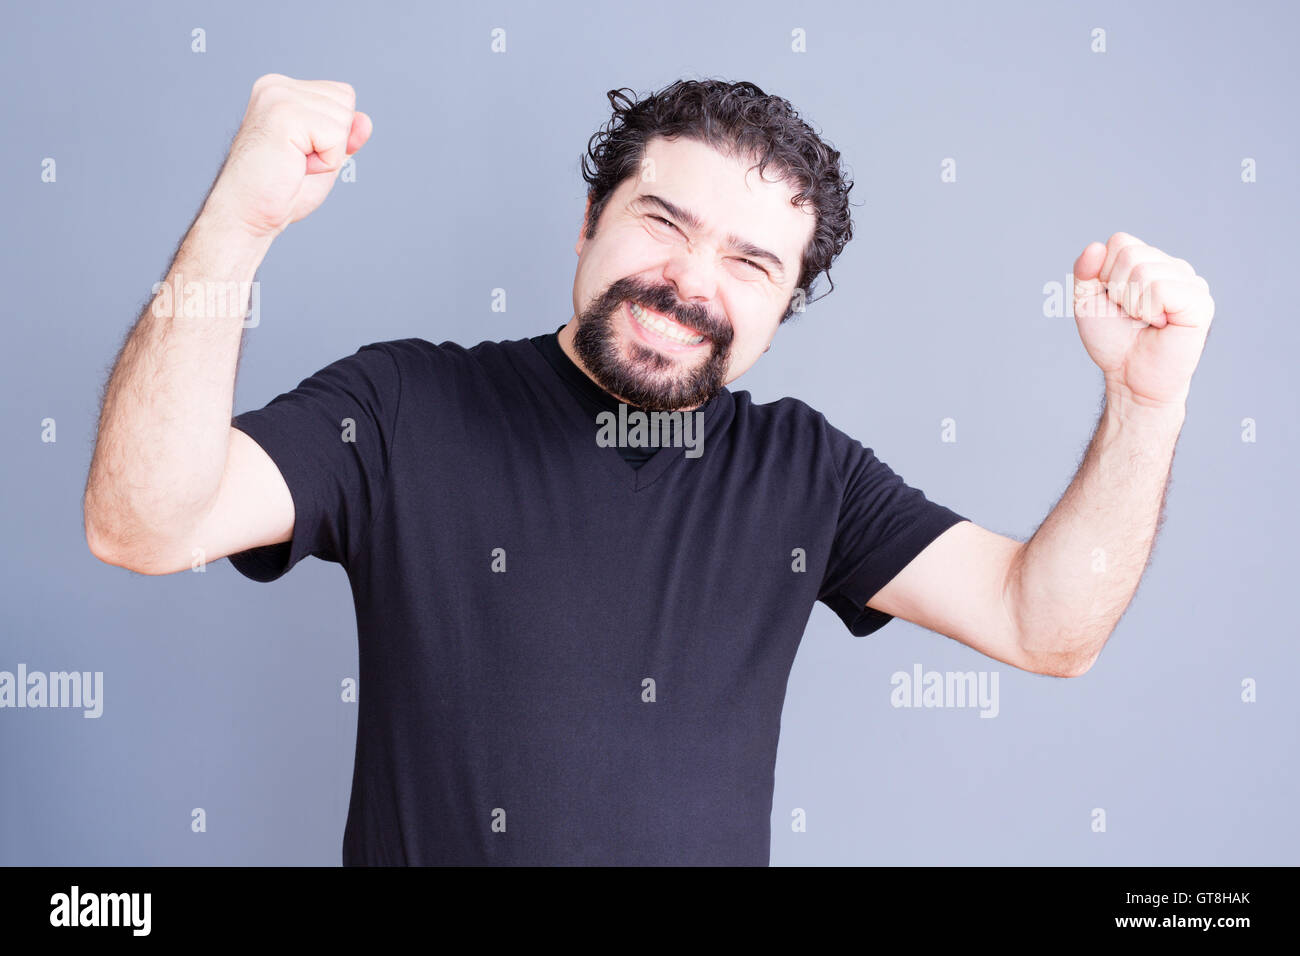 Ein hübscher bärtiger Mann im schwarzen Hemd hochhalten Fäuste mit beschwingt Ausdruck über grauen Hintergrund Stockfoto